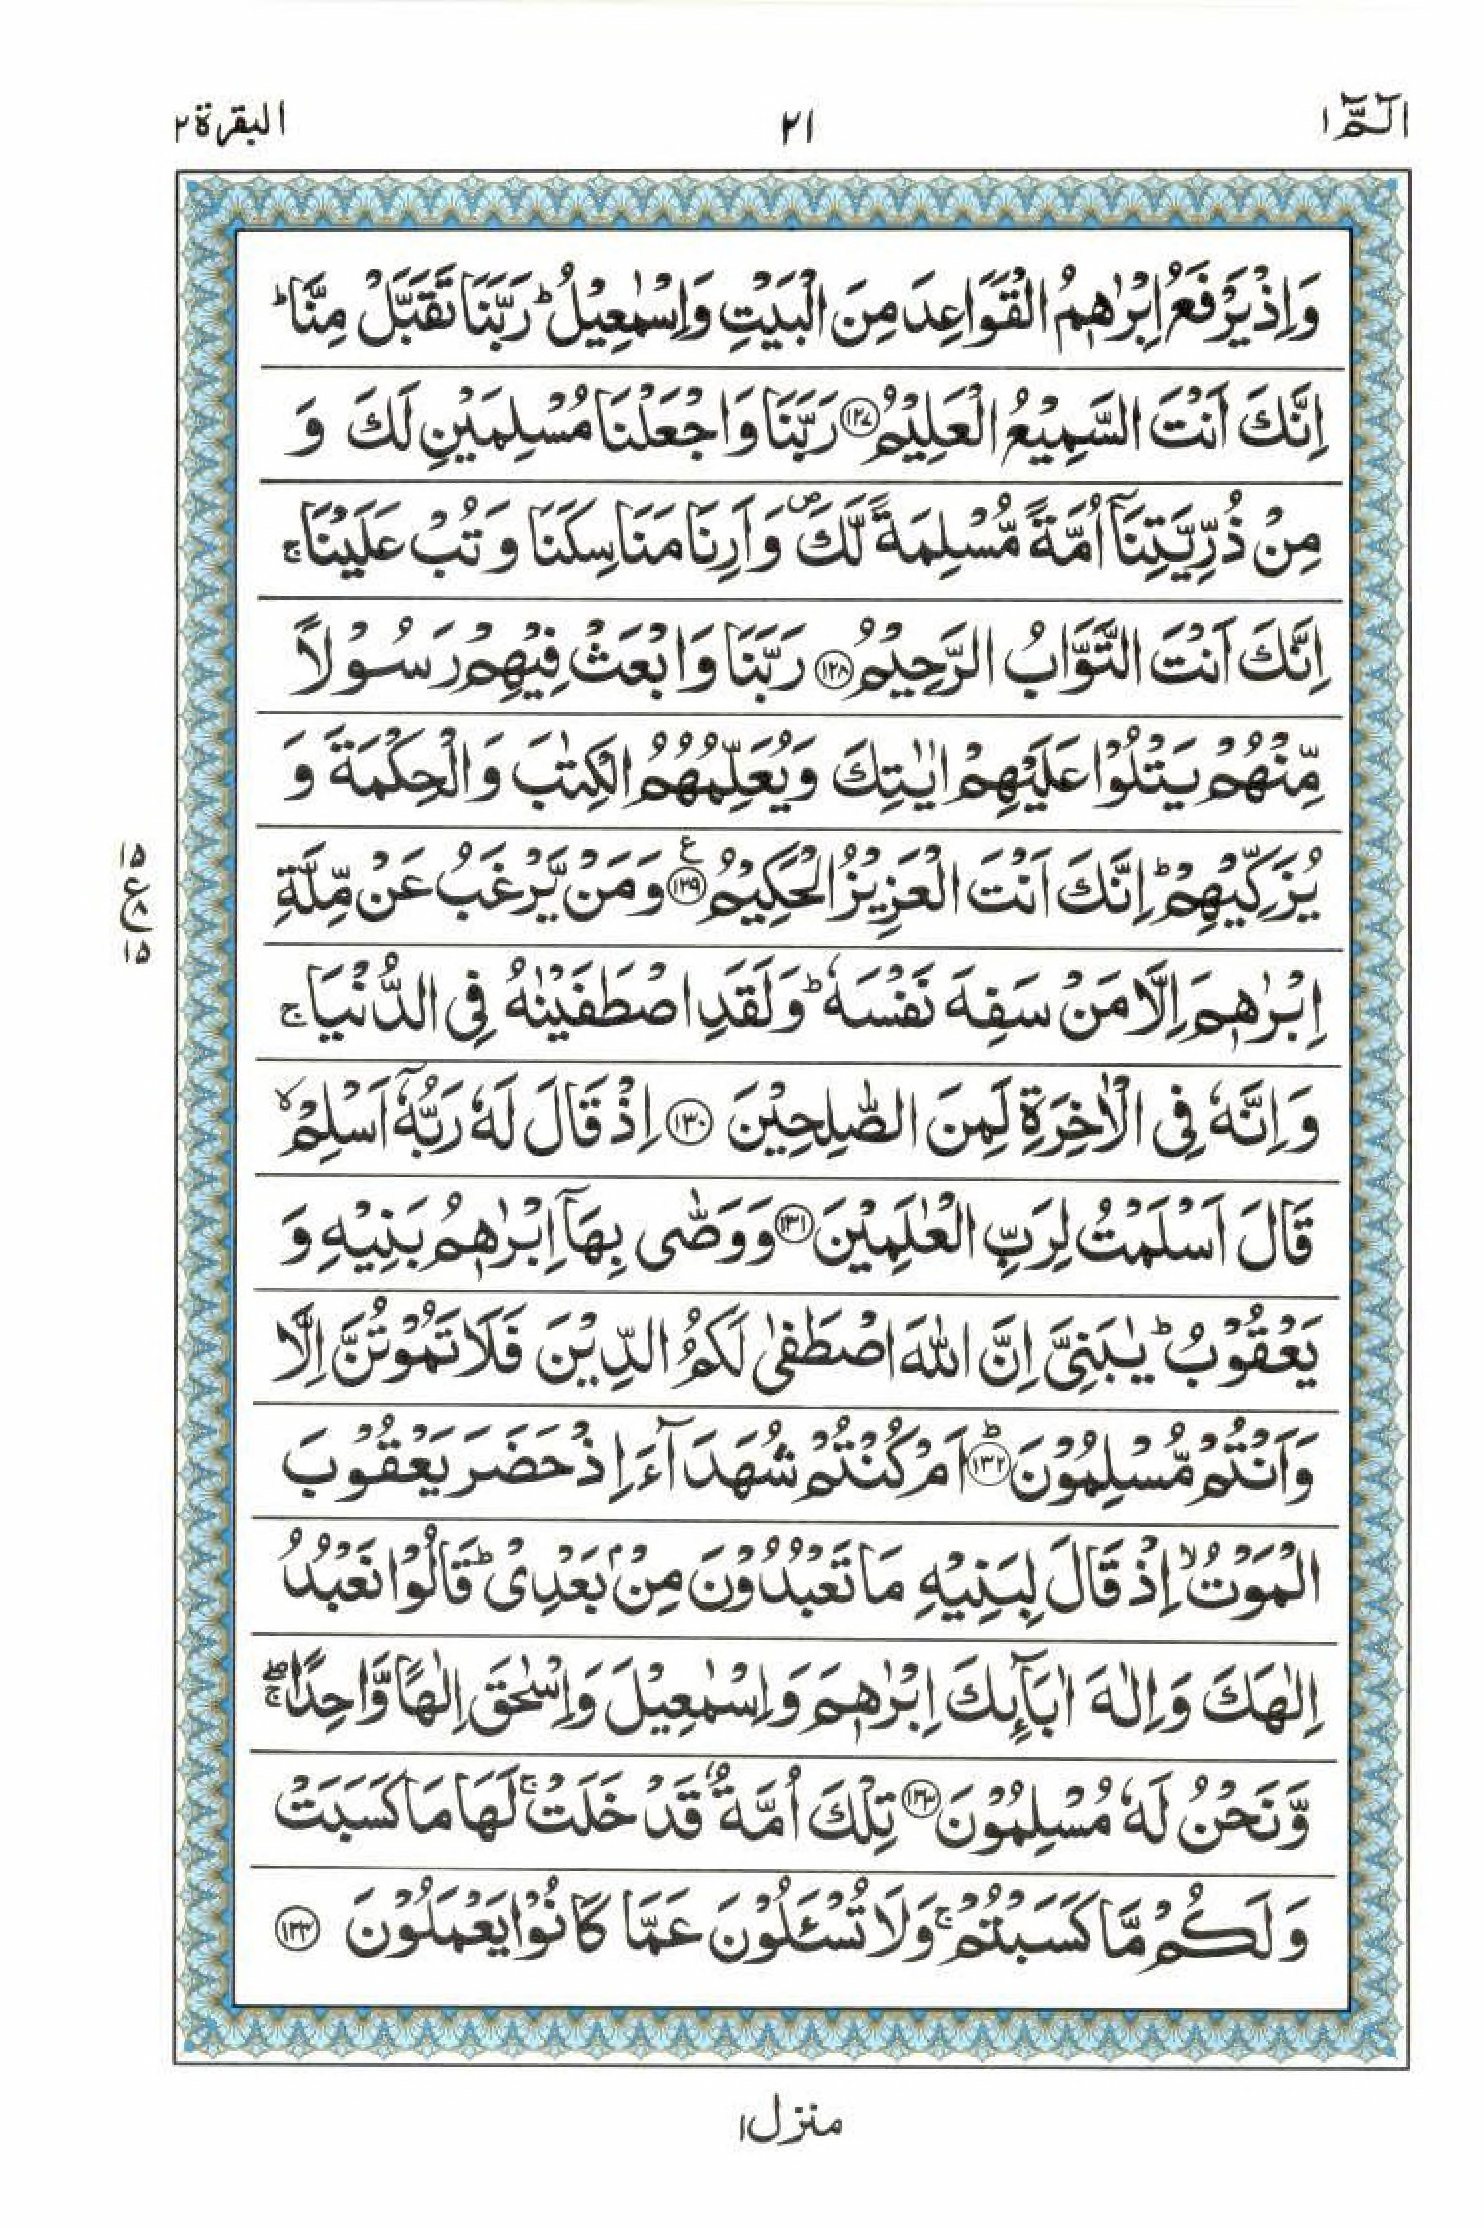 Read 15 Lines Al Quran Part 1 Page No 21, Practice Quran